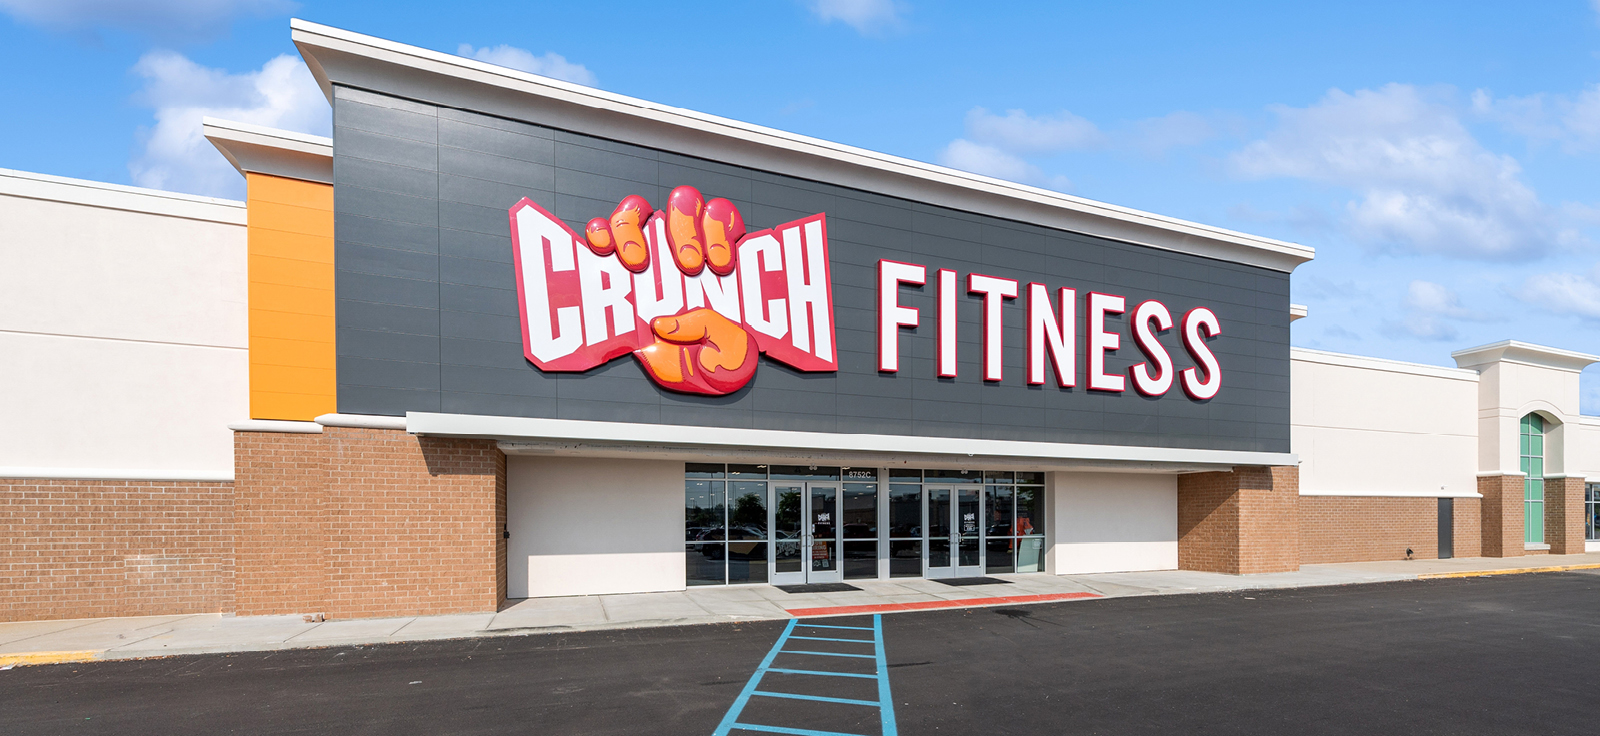 Crunch gym